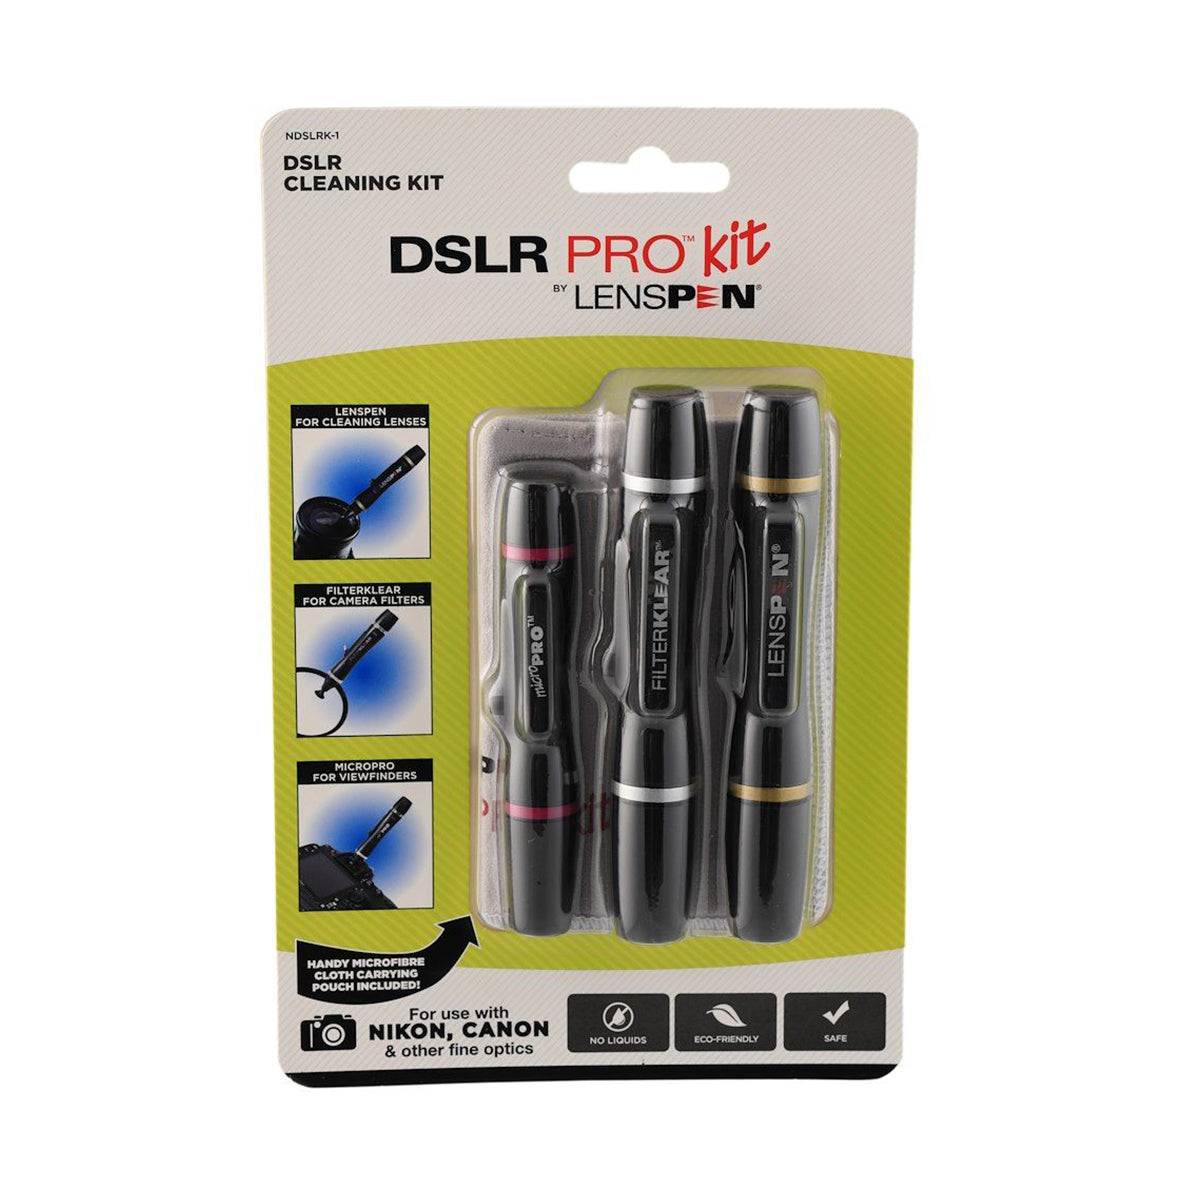 LensPen DSLR Pro Kit